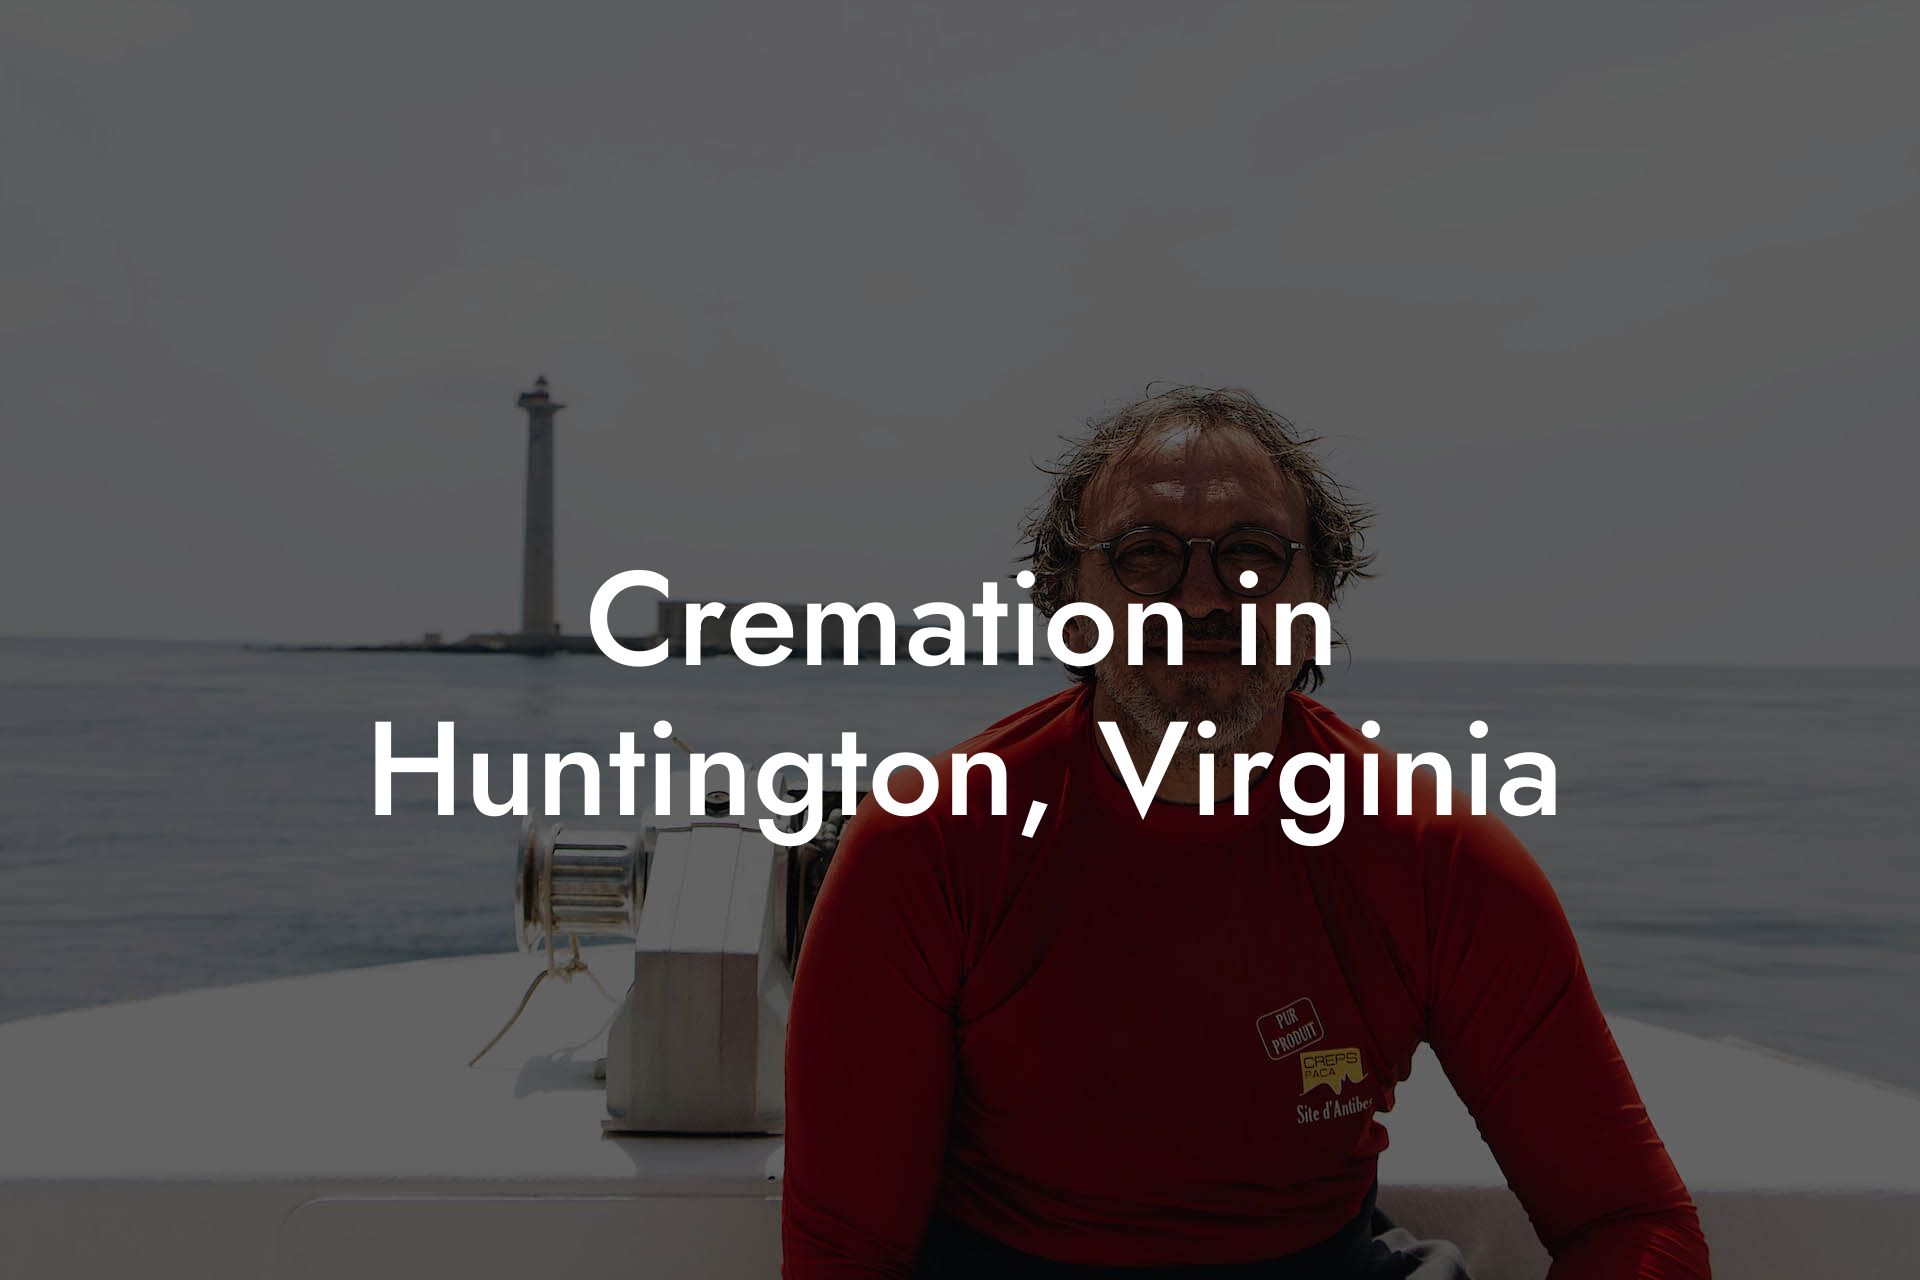 Cremation in Huntington, Virginia